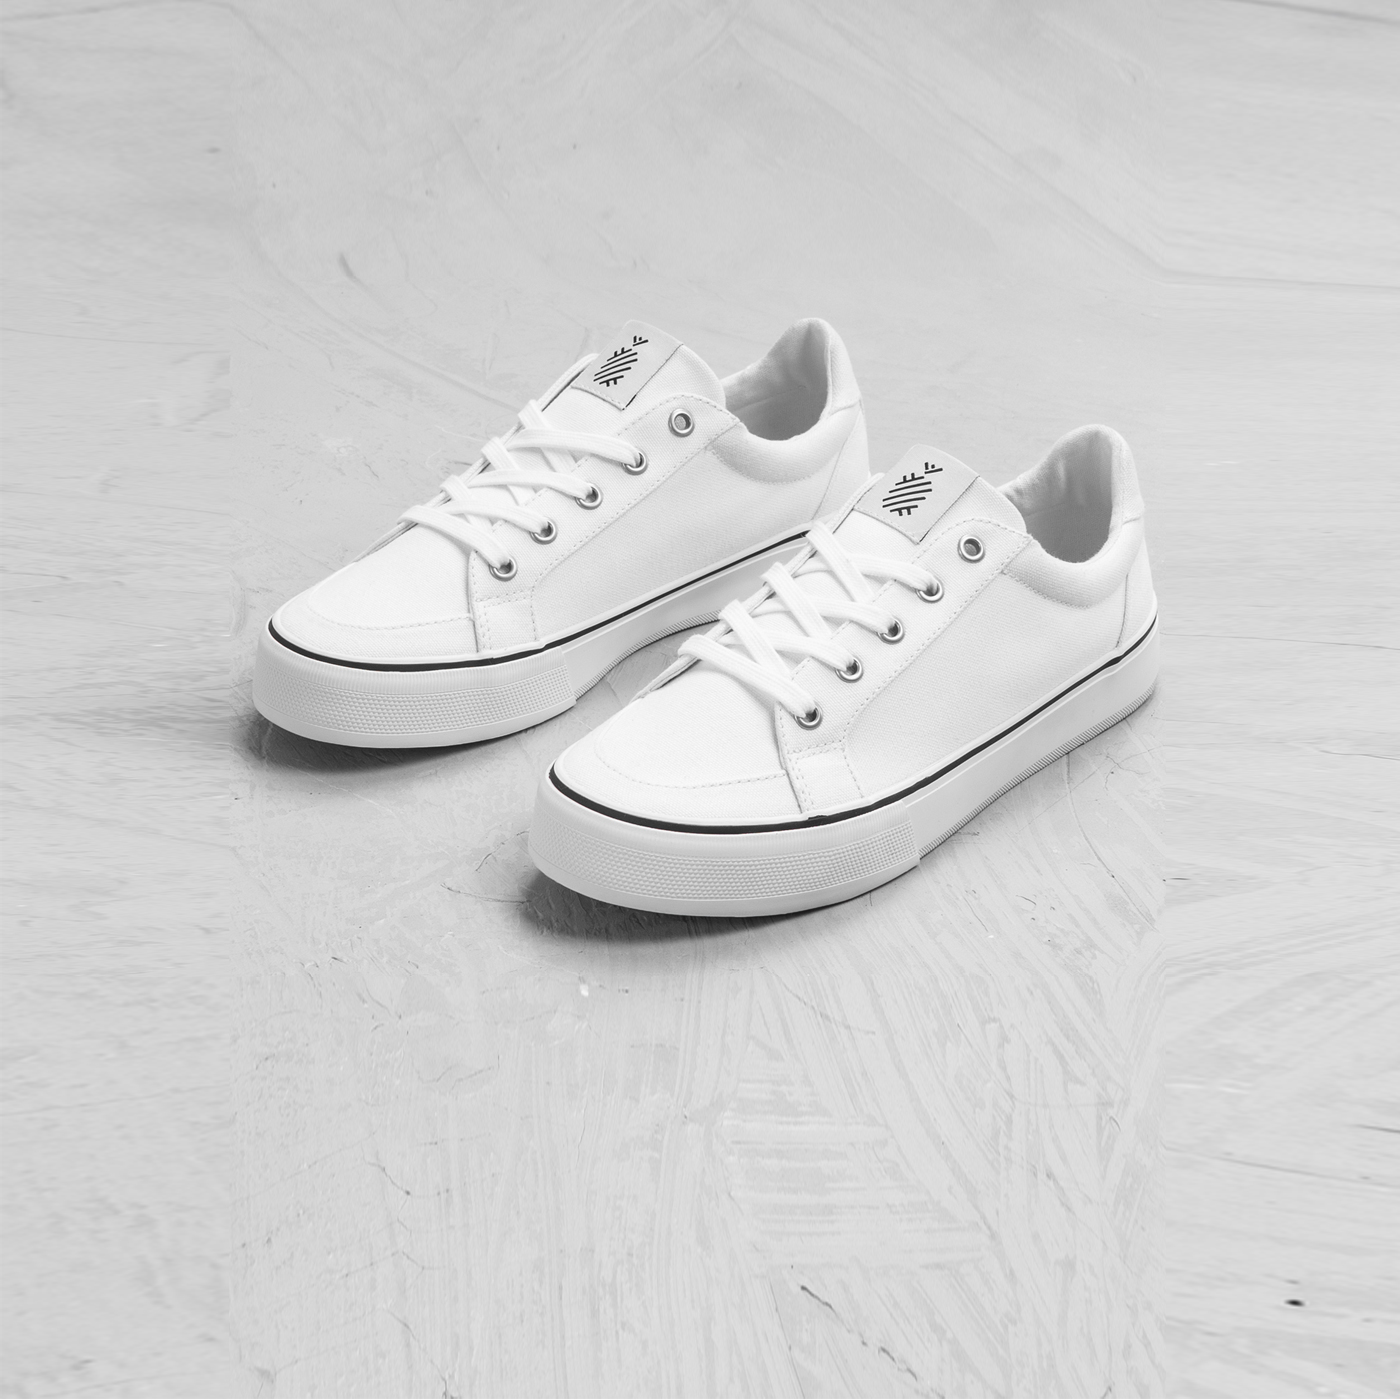 8 đôi sneakers trắng "made in Vietnam" chuẩn thời thượng, kết hợp được với mọi kiểu đồ và giá chỉ từ 350k - Ảnh 1.